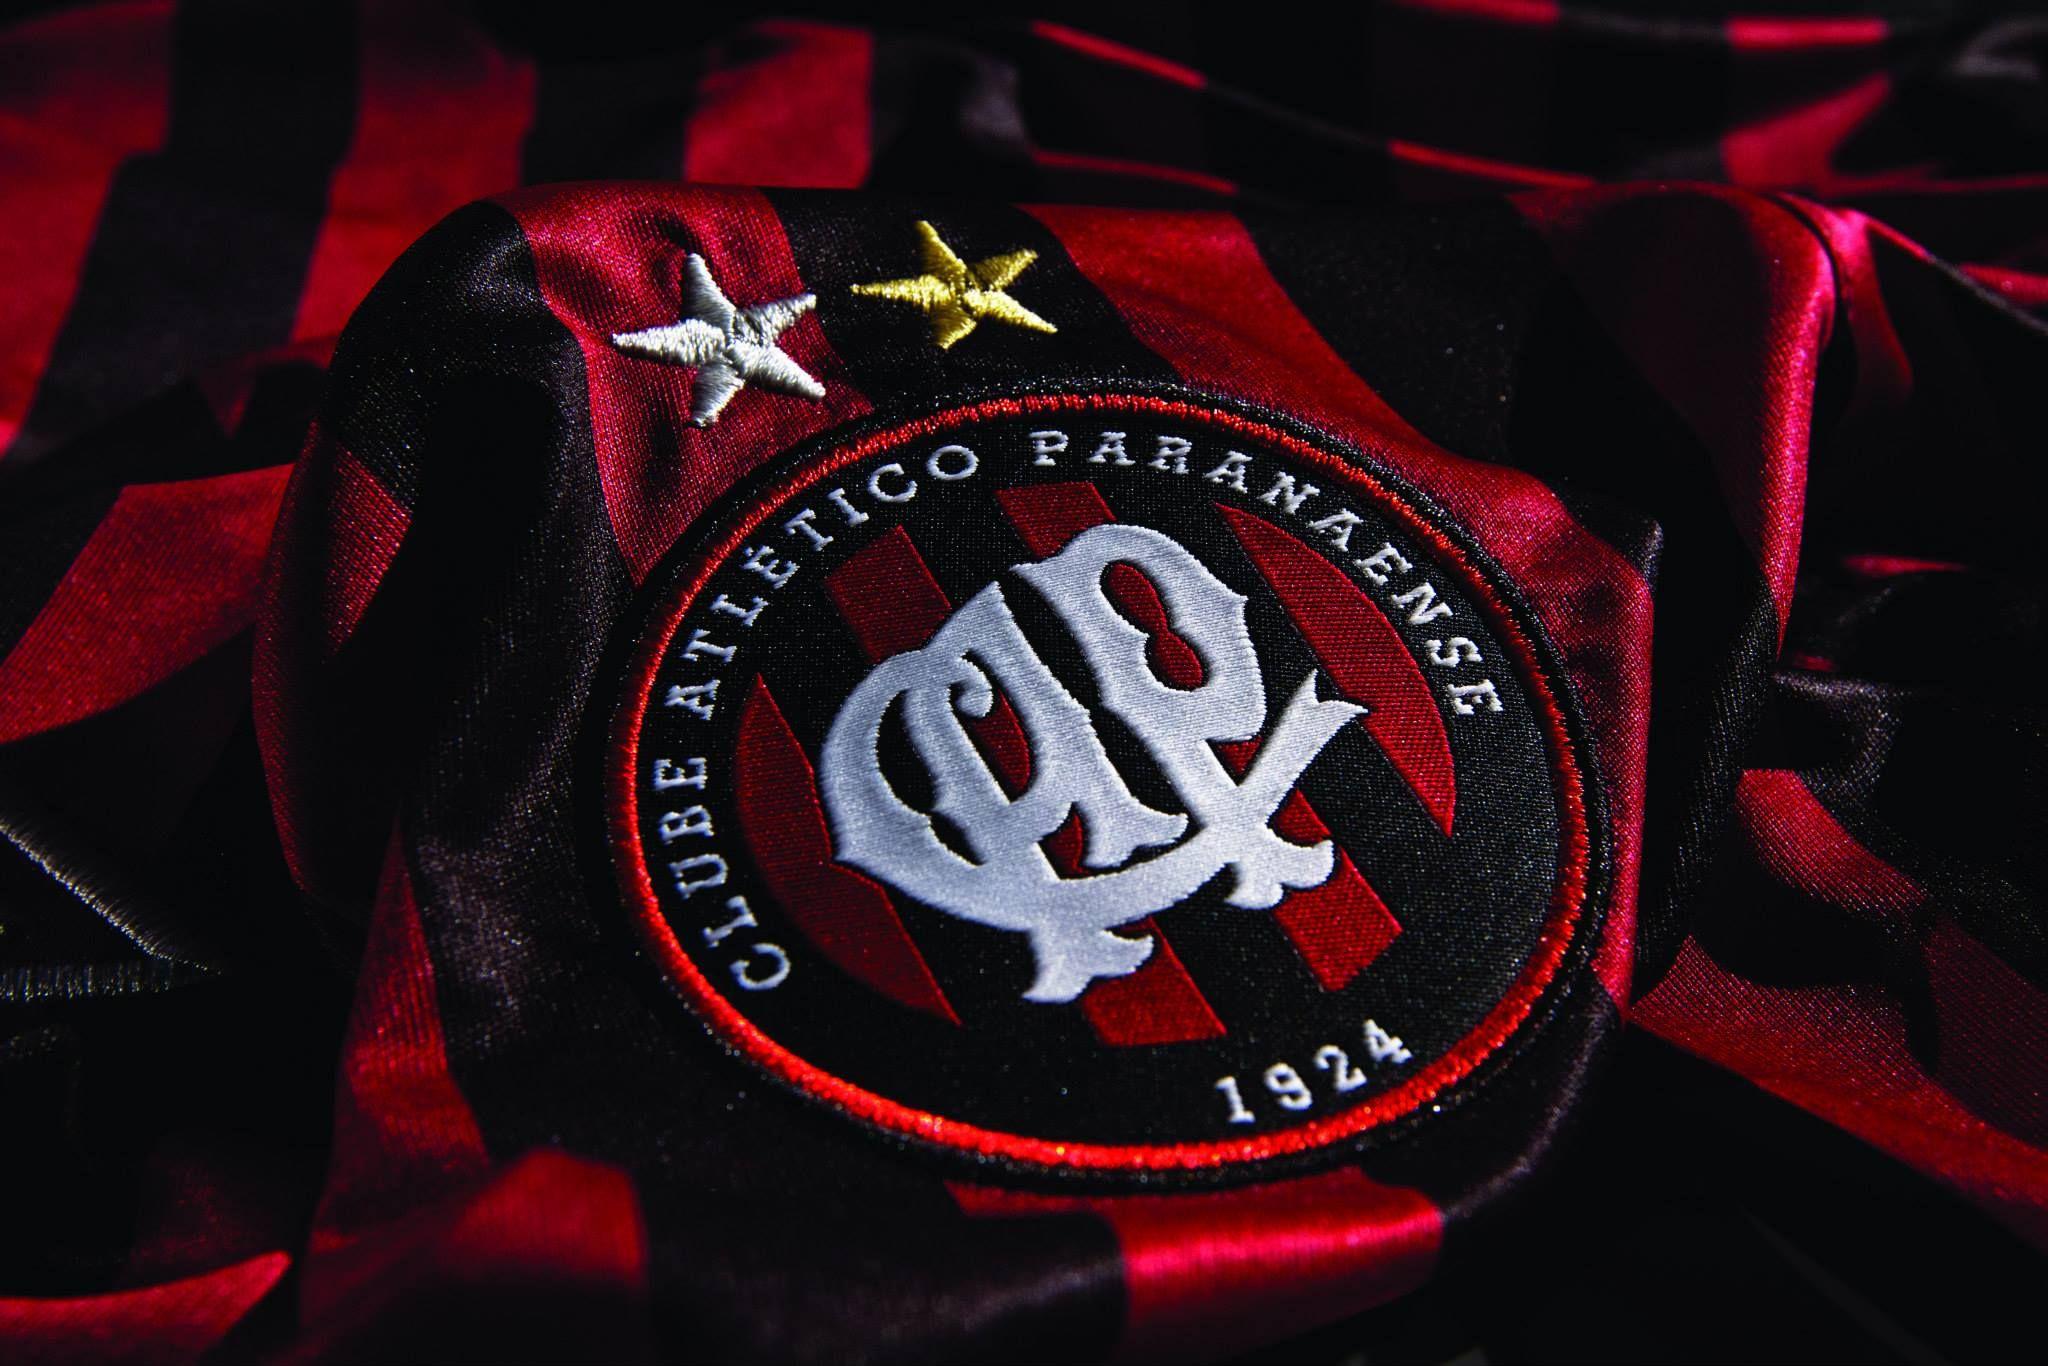 clube atlético paranaense. Clube Atlético Paranaense